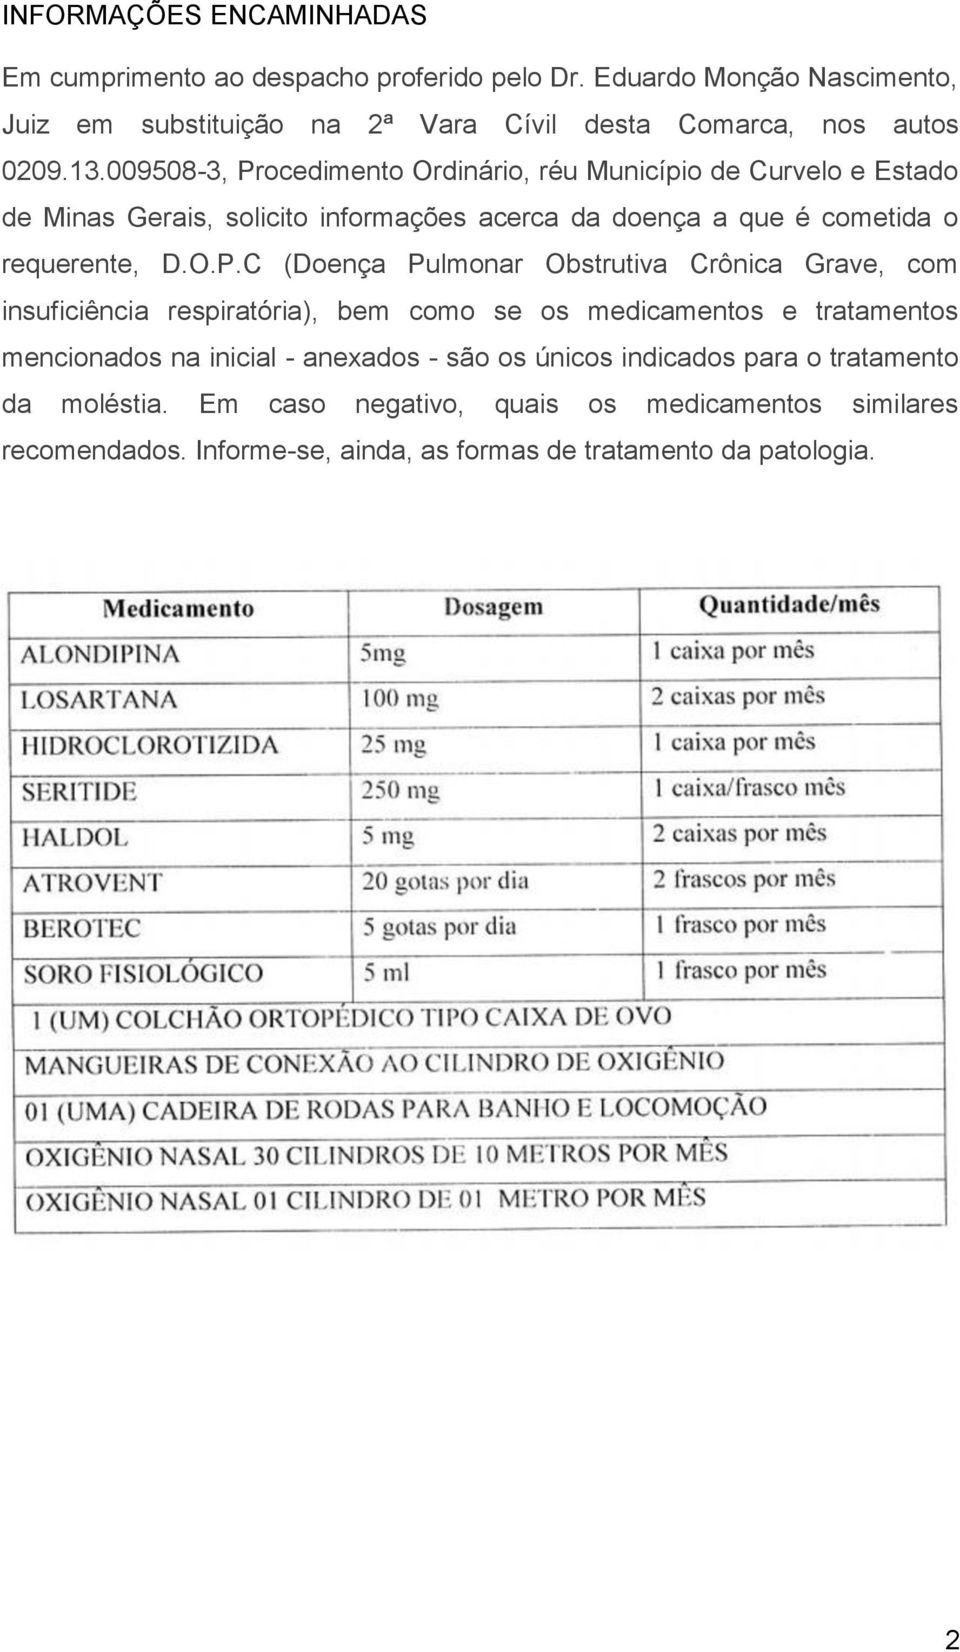 ocedimento Ordinário, réu Município de Curvelo e Estado de Minas Gerais, solicito informações acerca da doença a que é cometida o requerente, D.O.P.